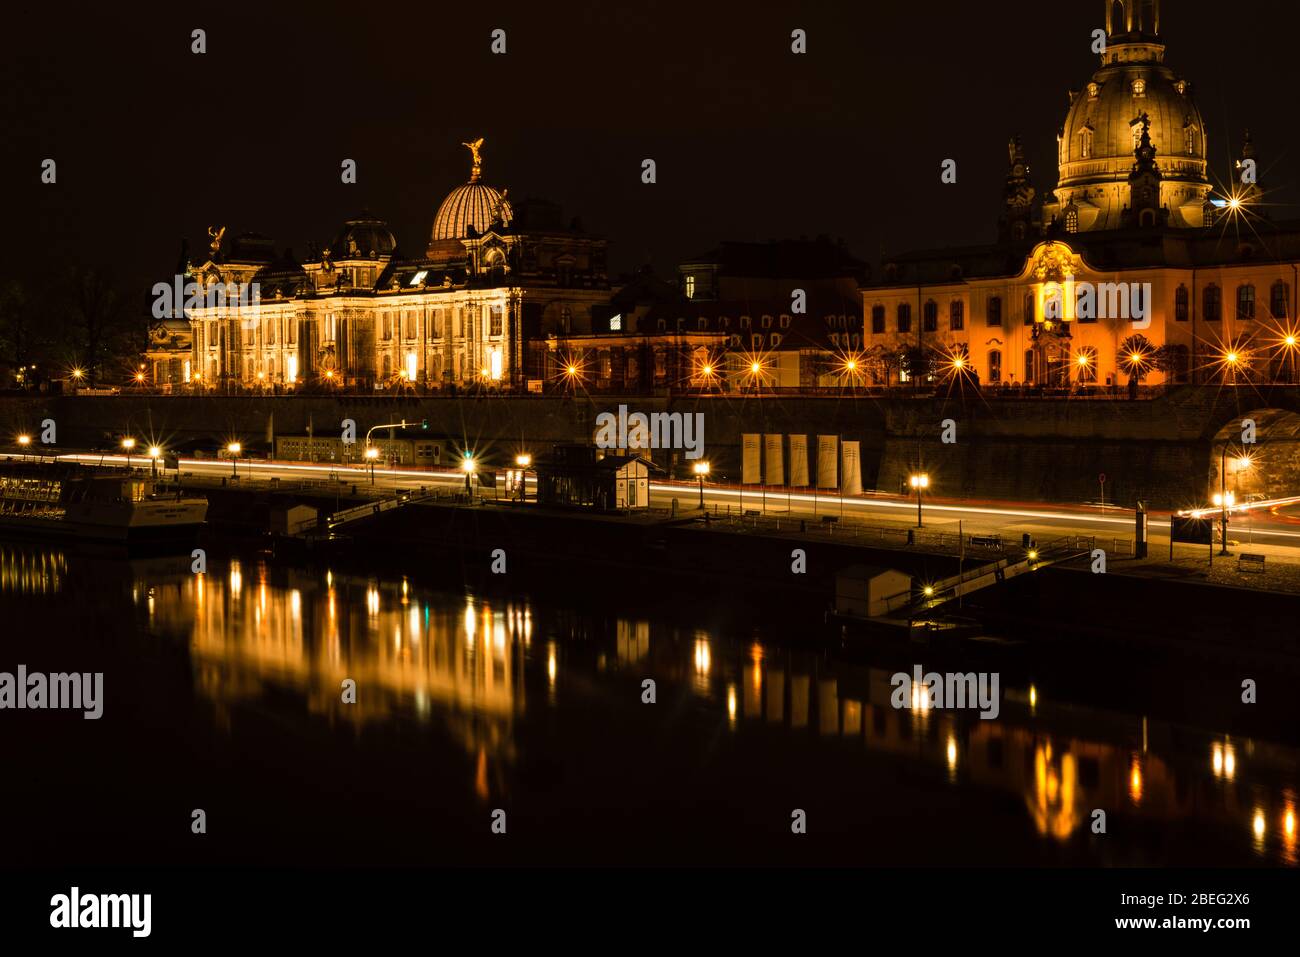 Paisible Elbe au bord de la rivière de Dresde, le soir, avec vue sur une partie de la vieille ville. Banque D'Images